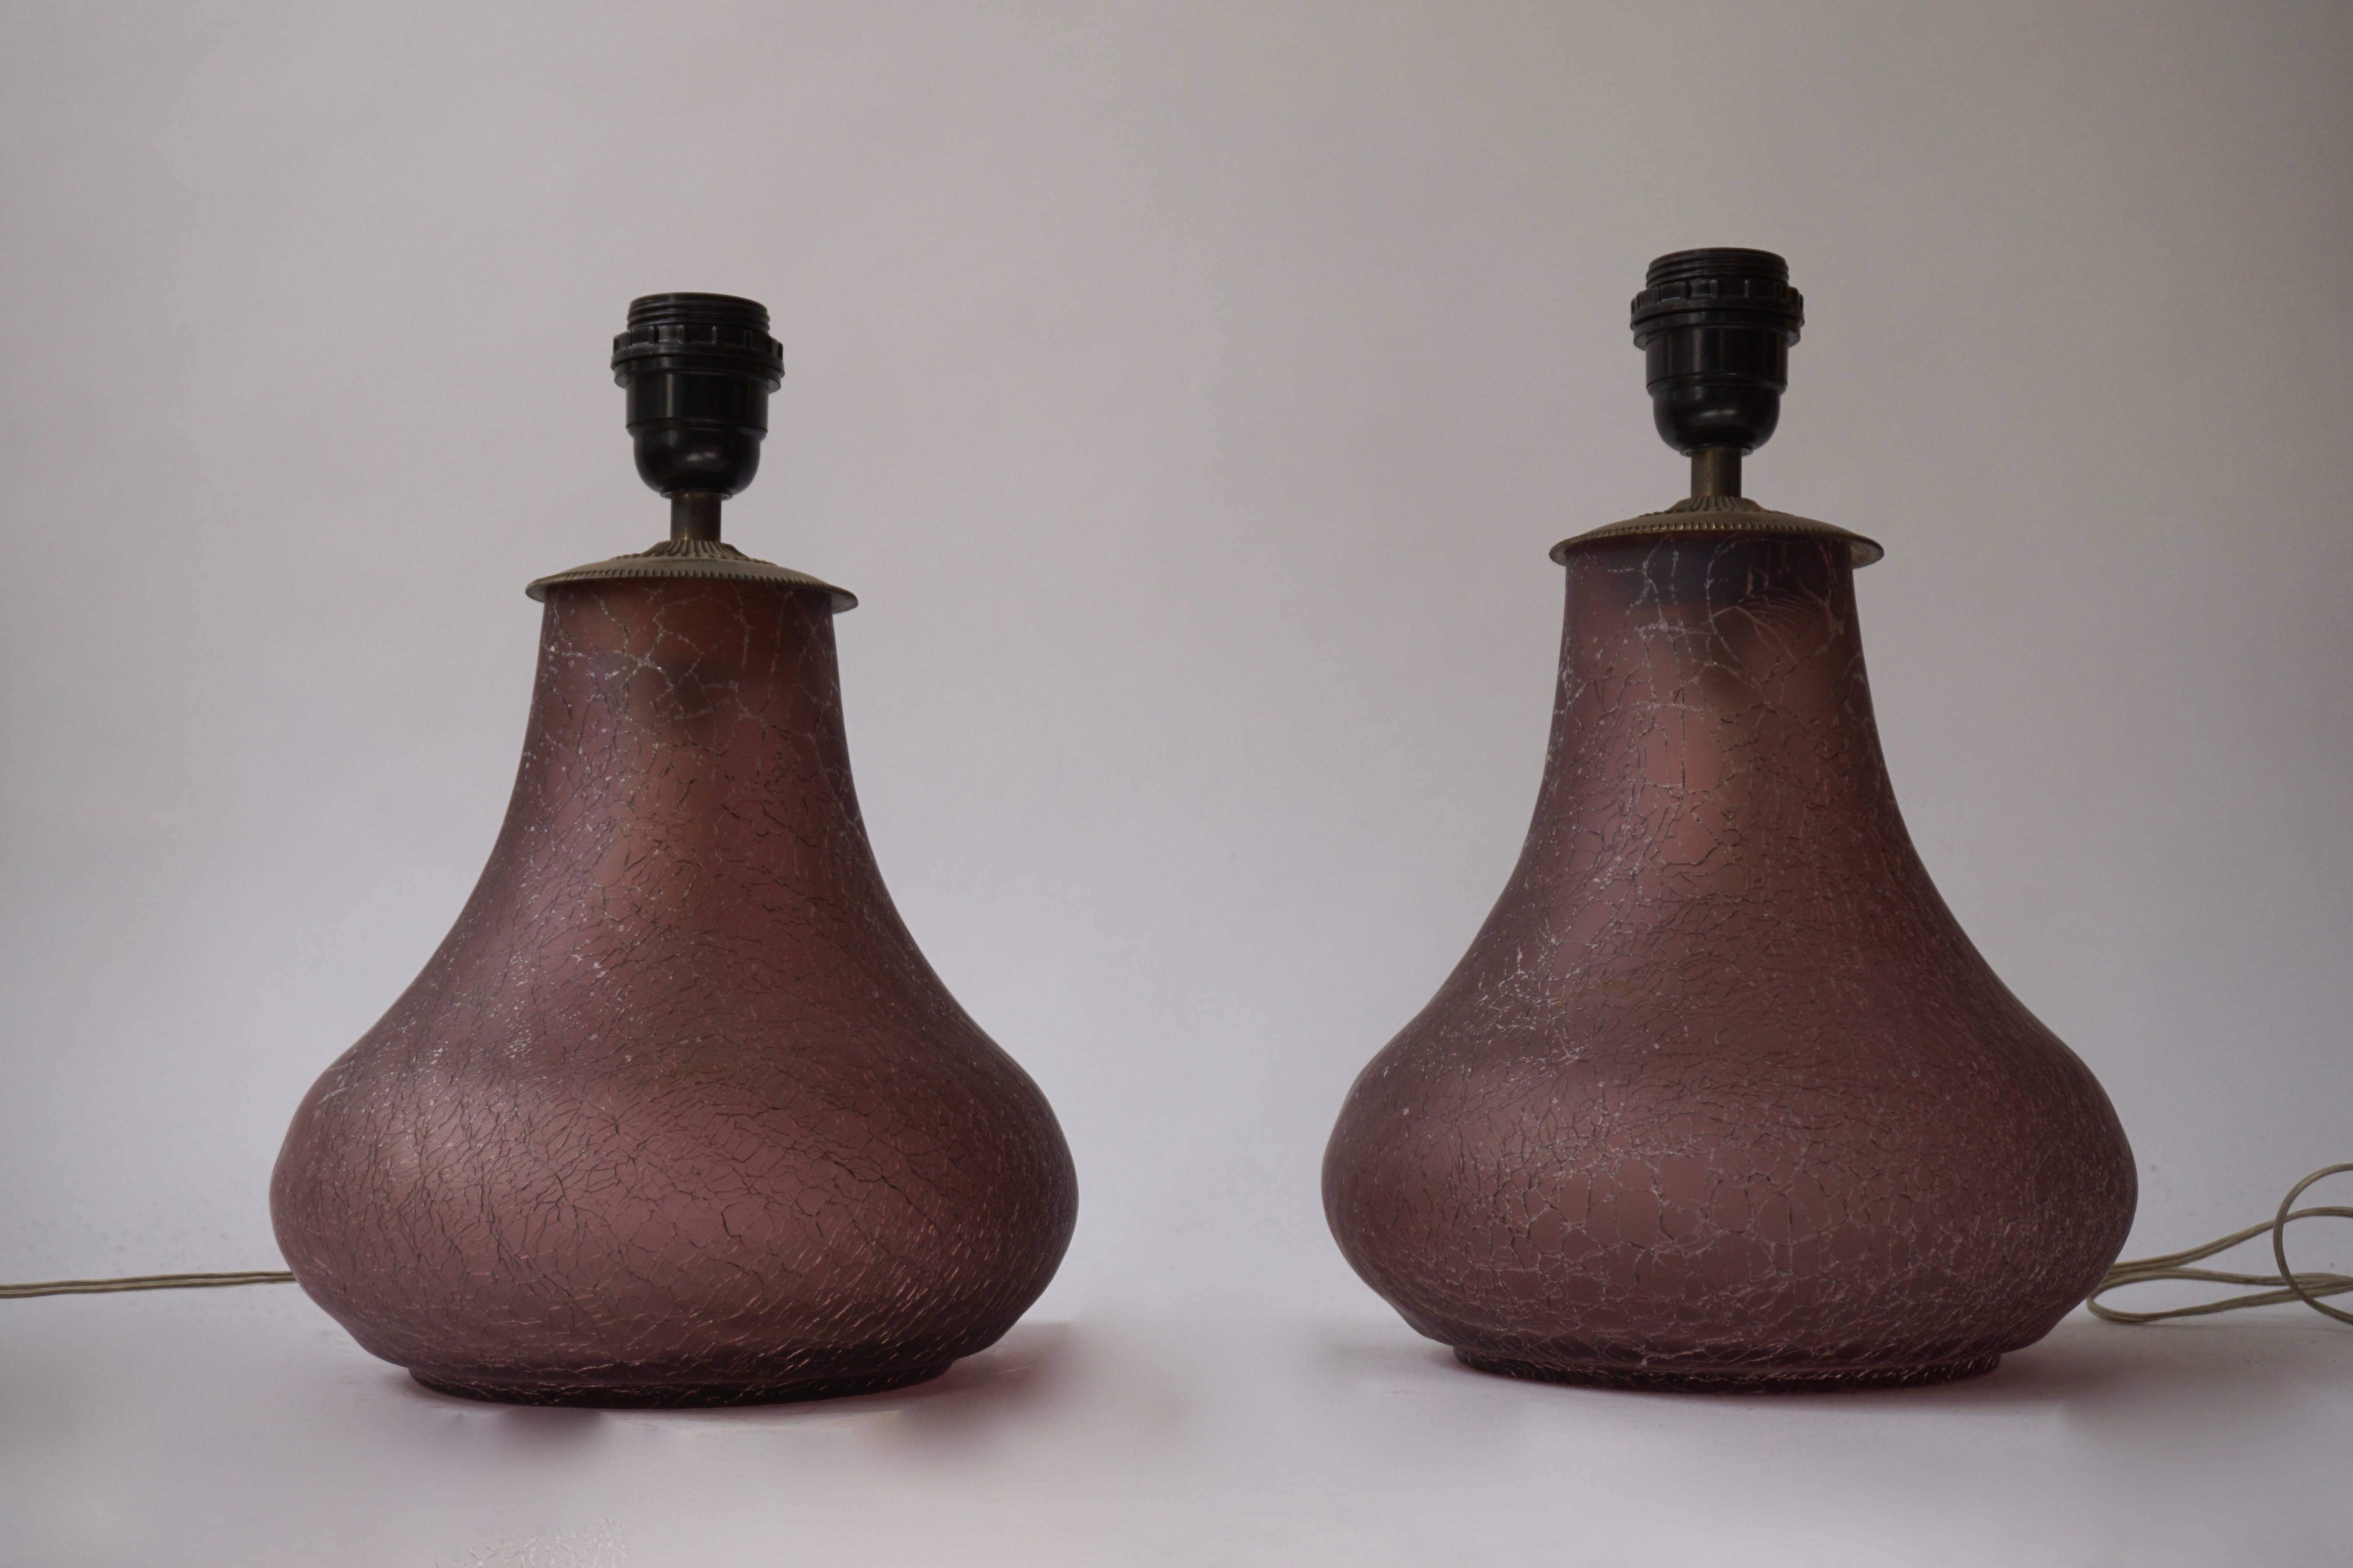 Deux lampes de table en verre de Murano.

Mesures : 
Diamètre 21 cm.
Hauteur verre 23 cm.
Hauteur totale 31 cm.